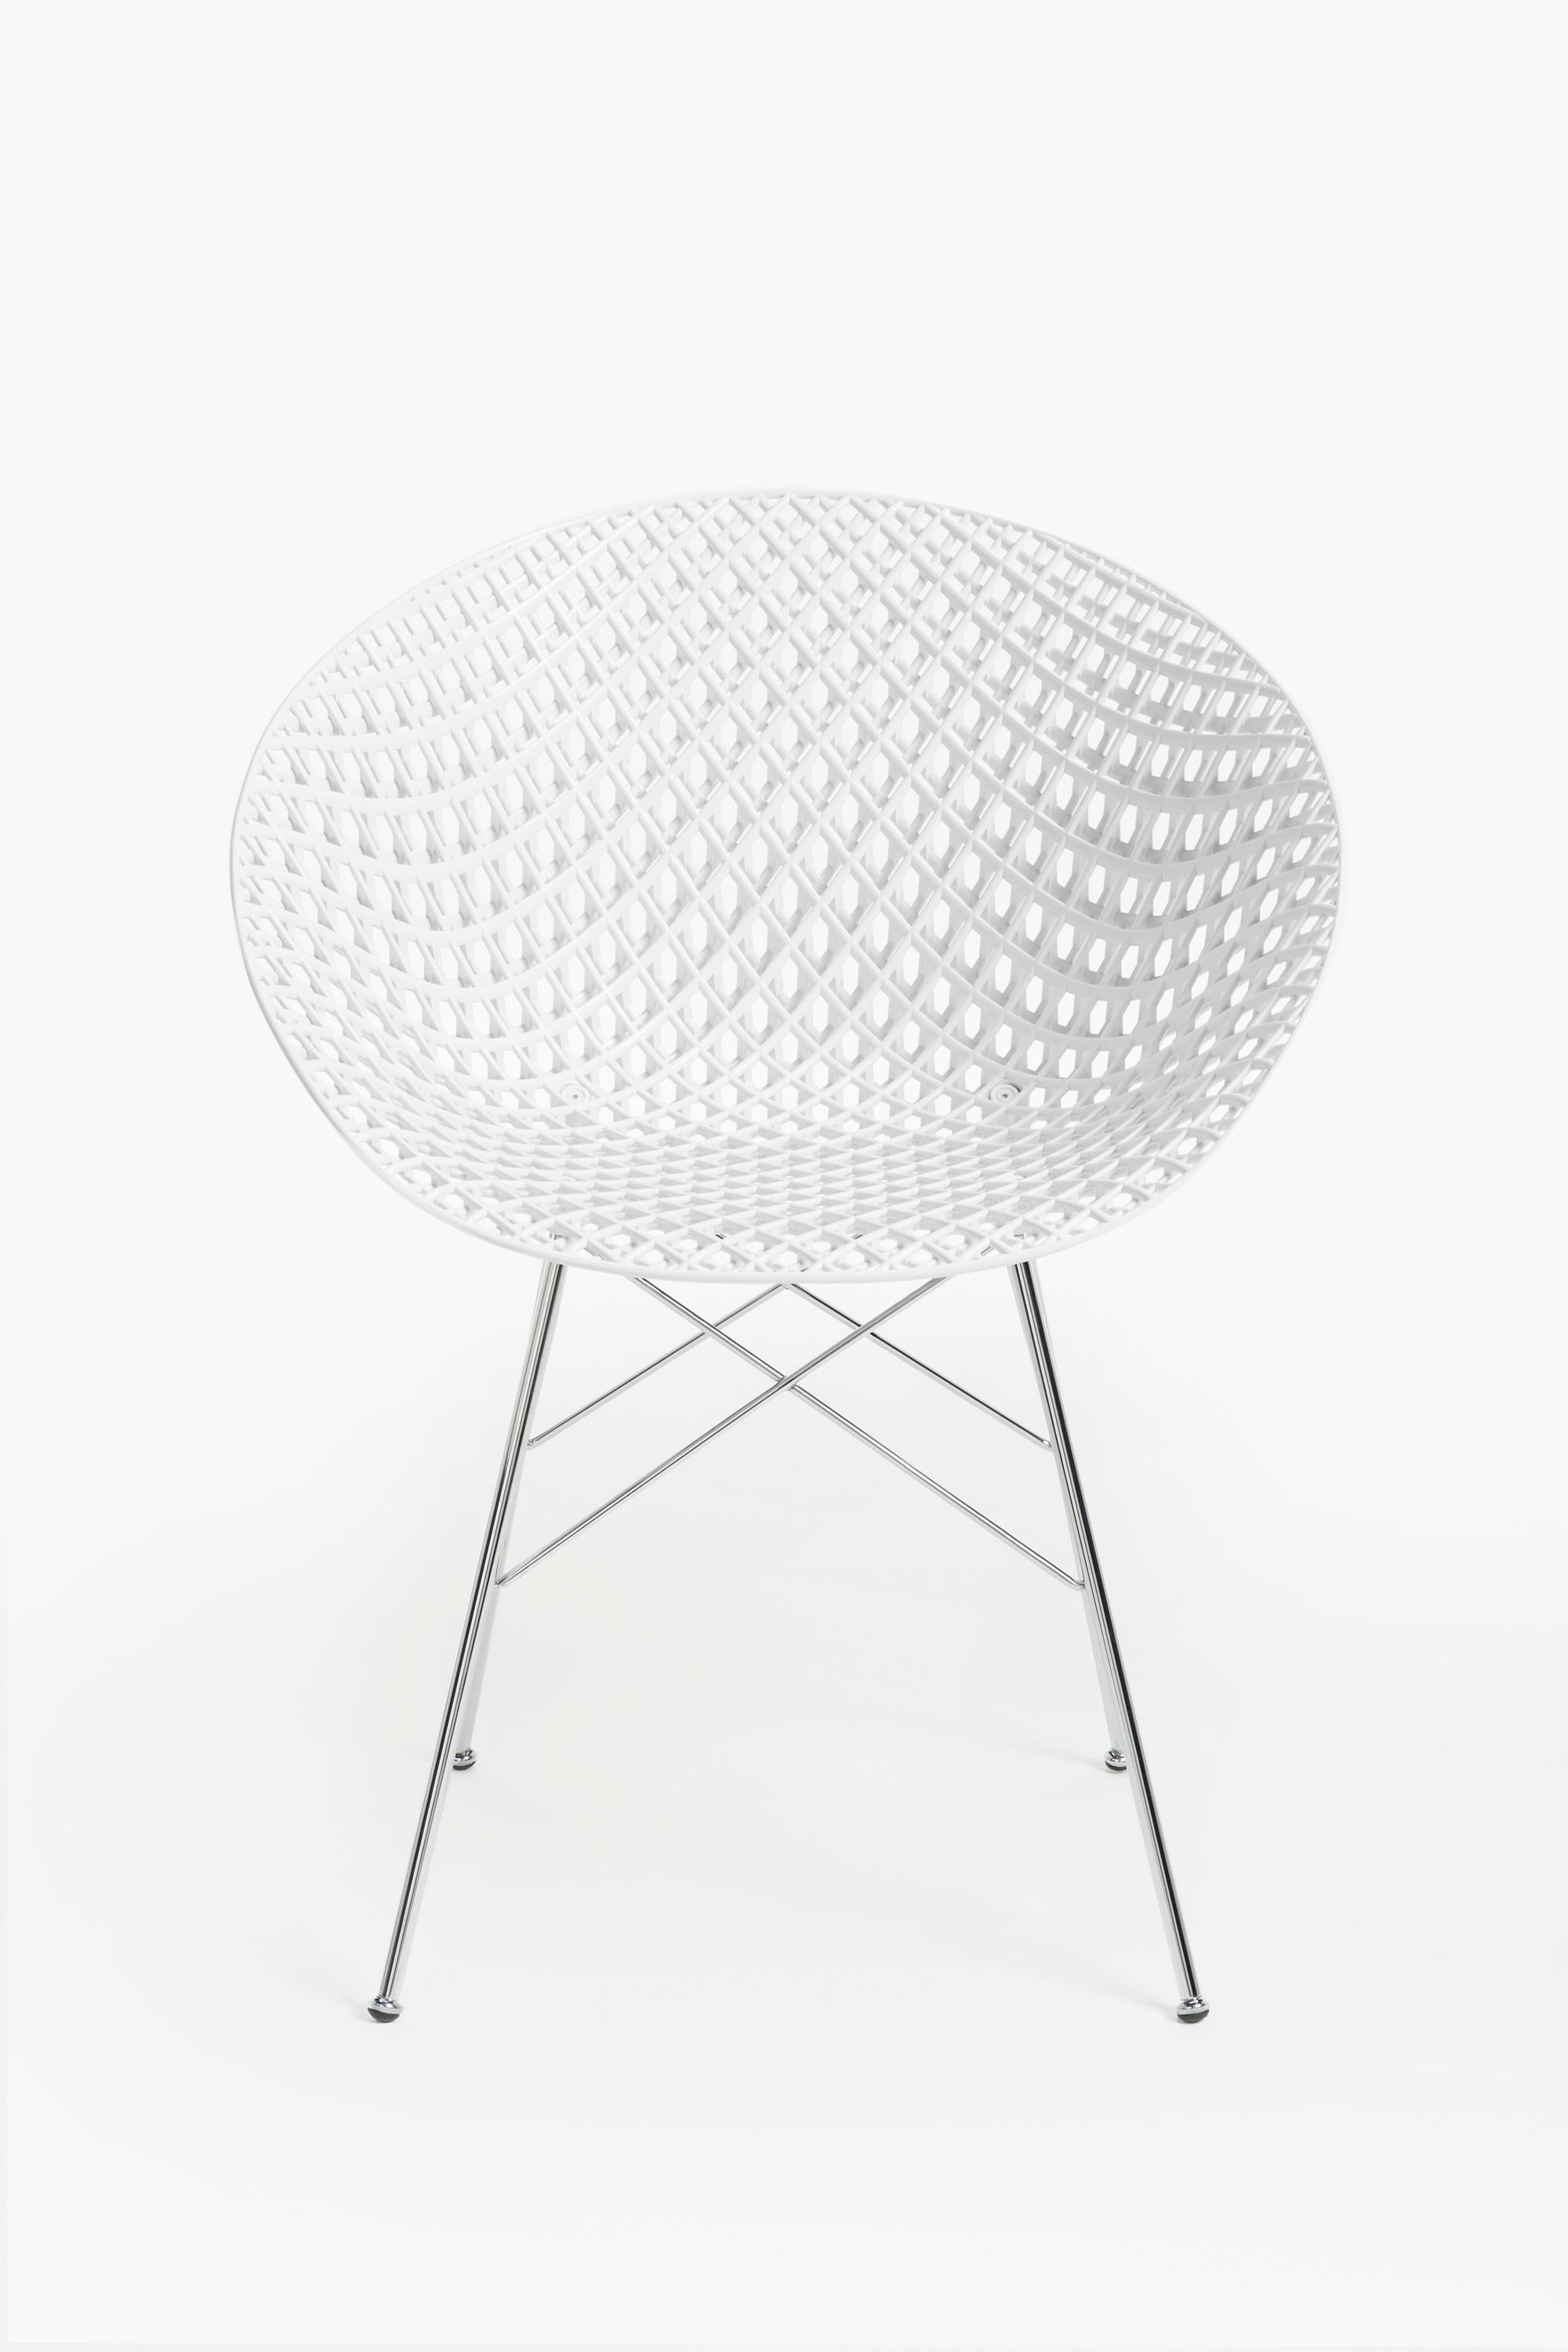 L'interaction constante entre le design et l'innovation technologique a conduit à la création de Smatrik, la dernière interprétation d'une chaise, conçue par Tokujin Yoshioka. Il est doté d'un cadre innovant qui crée un effet tridimensionnel, ce qui